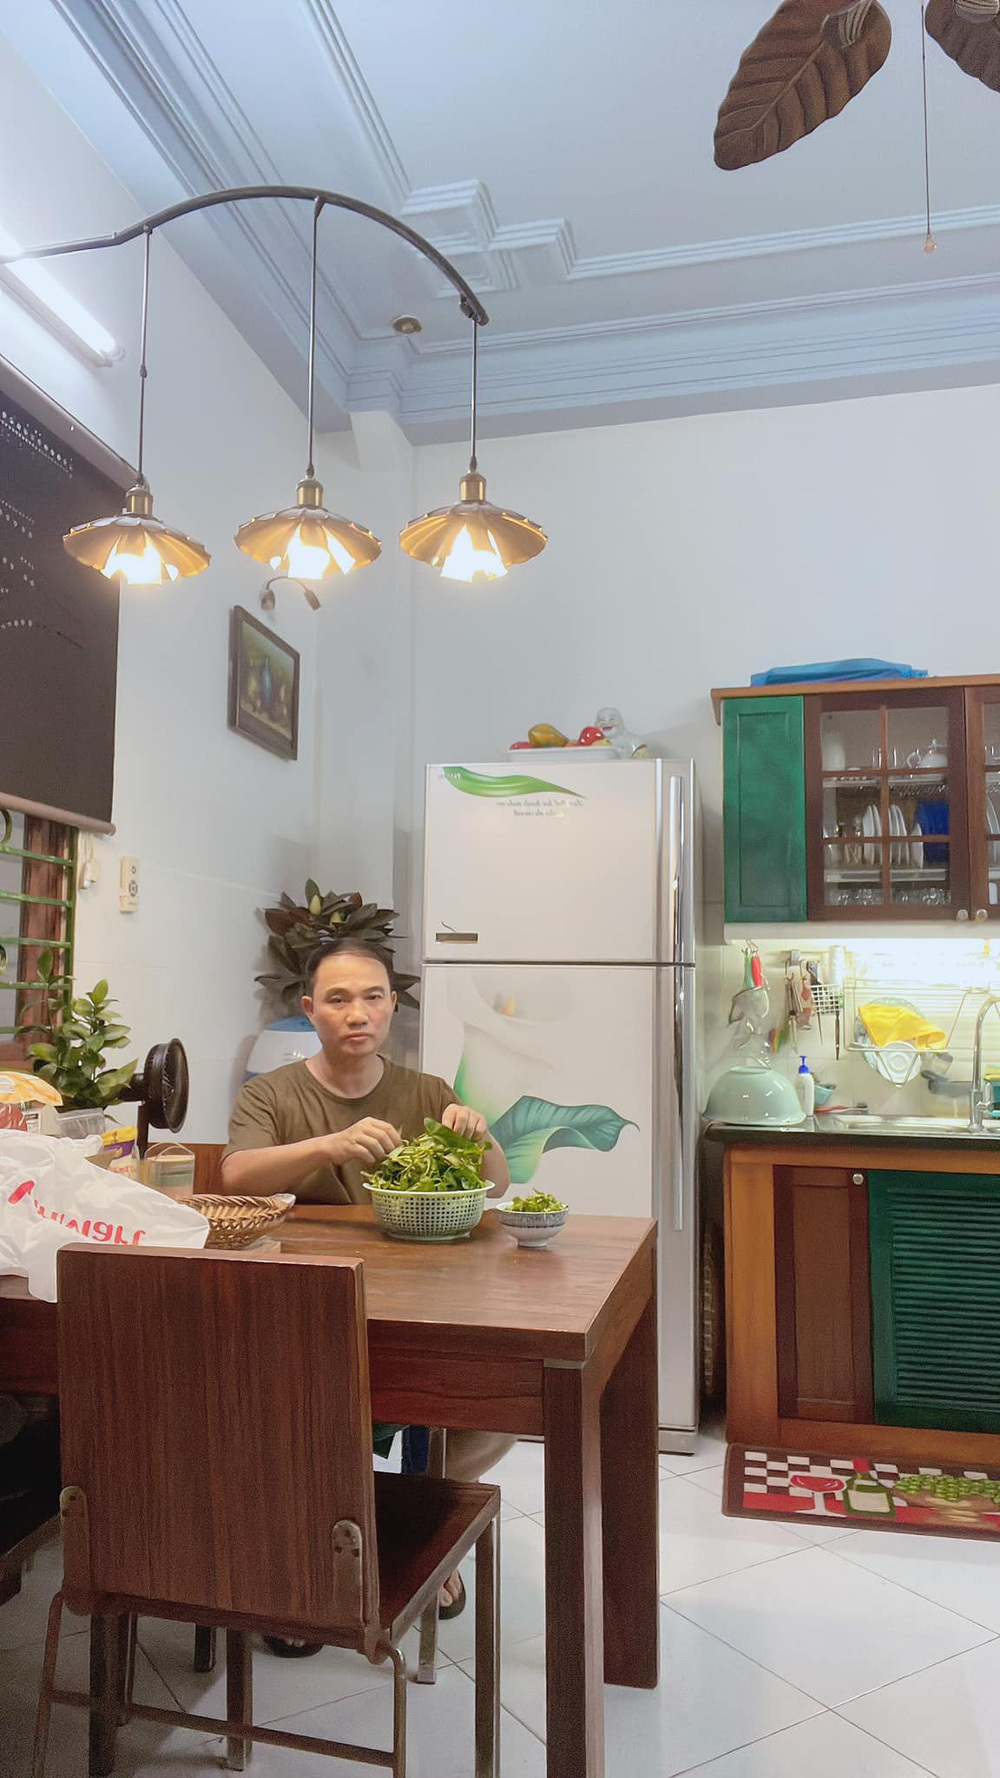  Quang Linh thường tự tay vào bếp để nấu ăn. (Ảnh: FB Quang Linh) - Tin sao Viet - Tin tuc sao Viet - Scandal sao Viet - Tin tuc cua Sao - Tin cua Sao